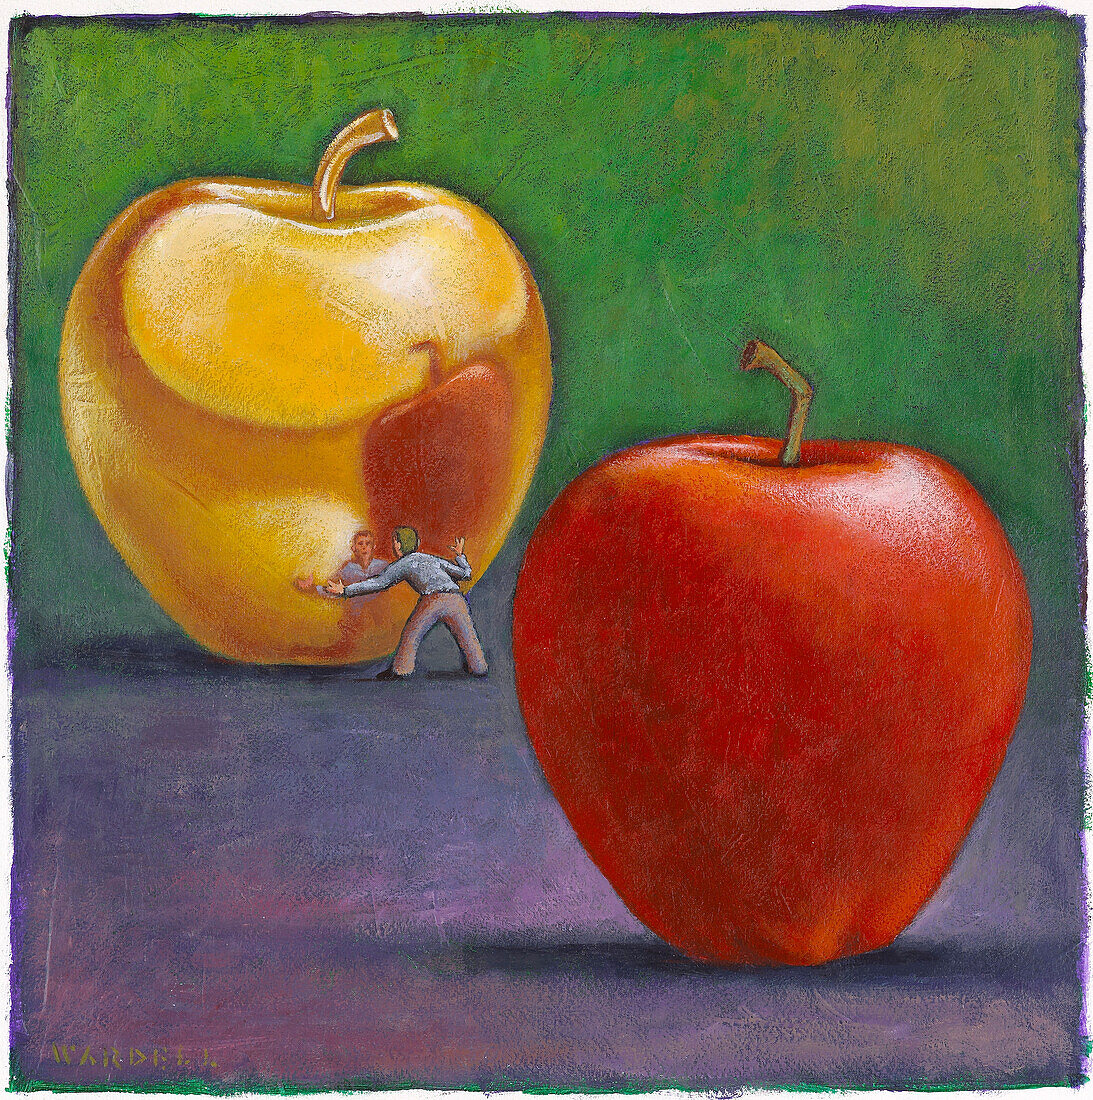 Illustration eines Mannes, der die Spiegelung in einem goldenen Apfel betrachtet, mit einem roten Apfel im Vordergrund